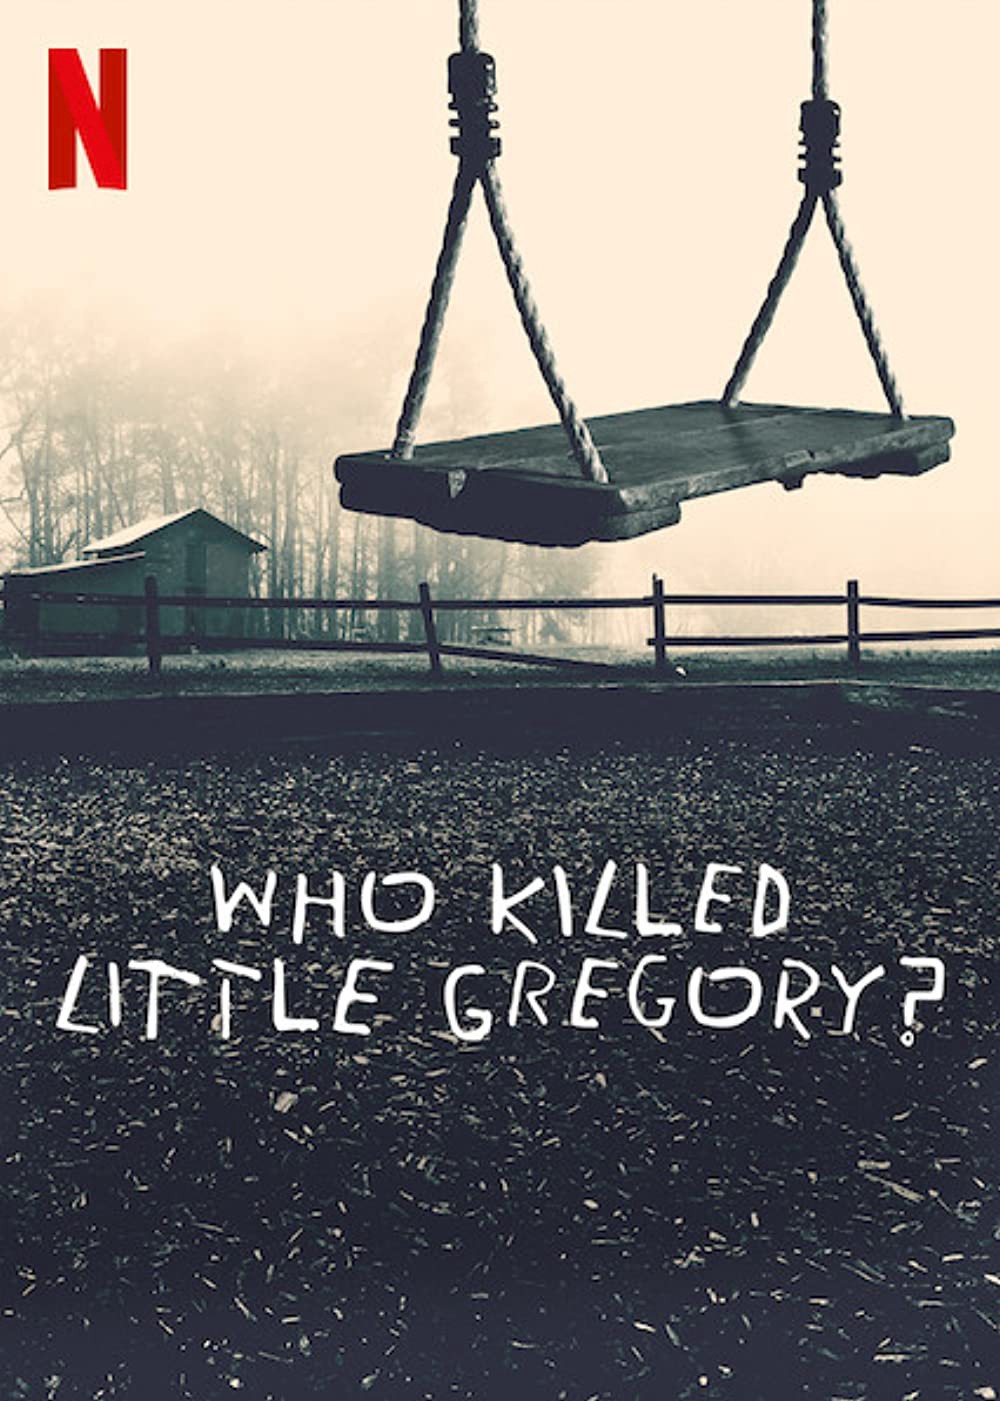 Ai đã sát hại bé Gregory? 2019